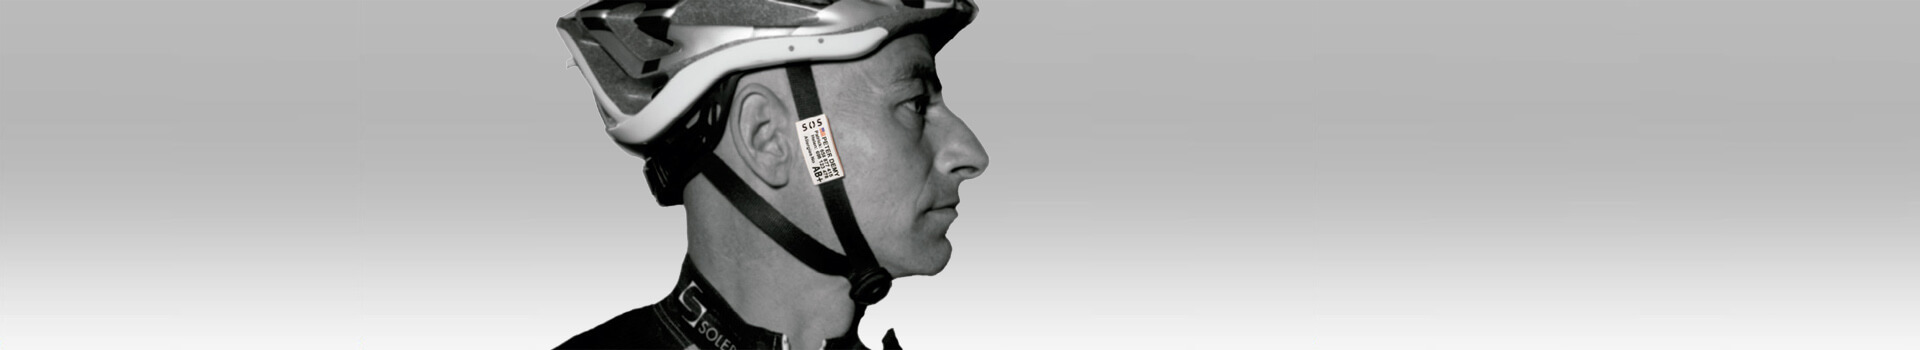 Placa de identificação de segurança para ciclistas